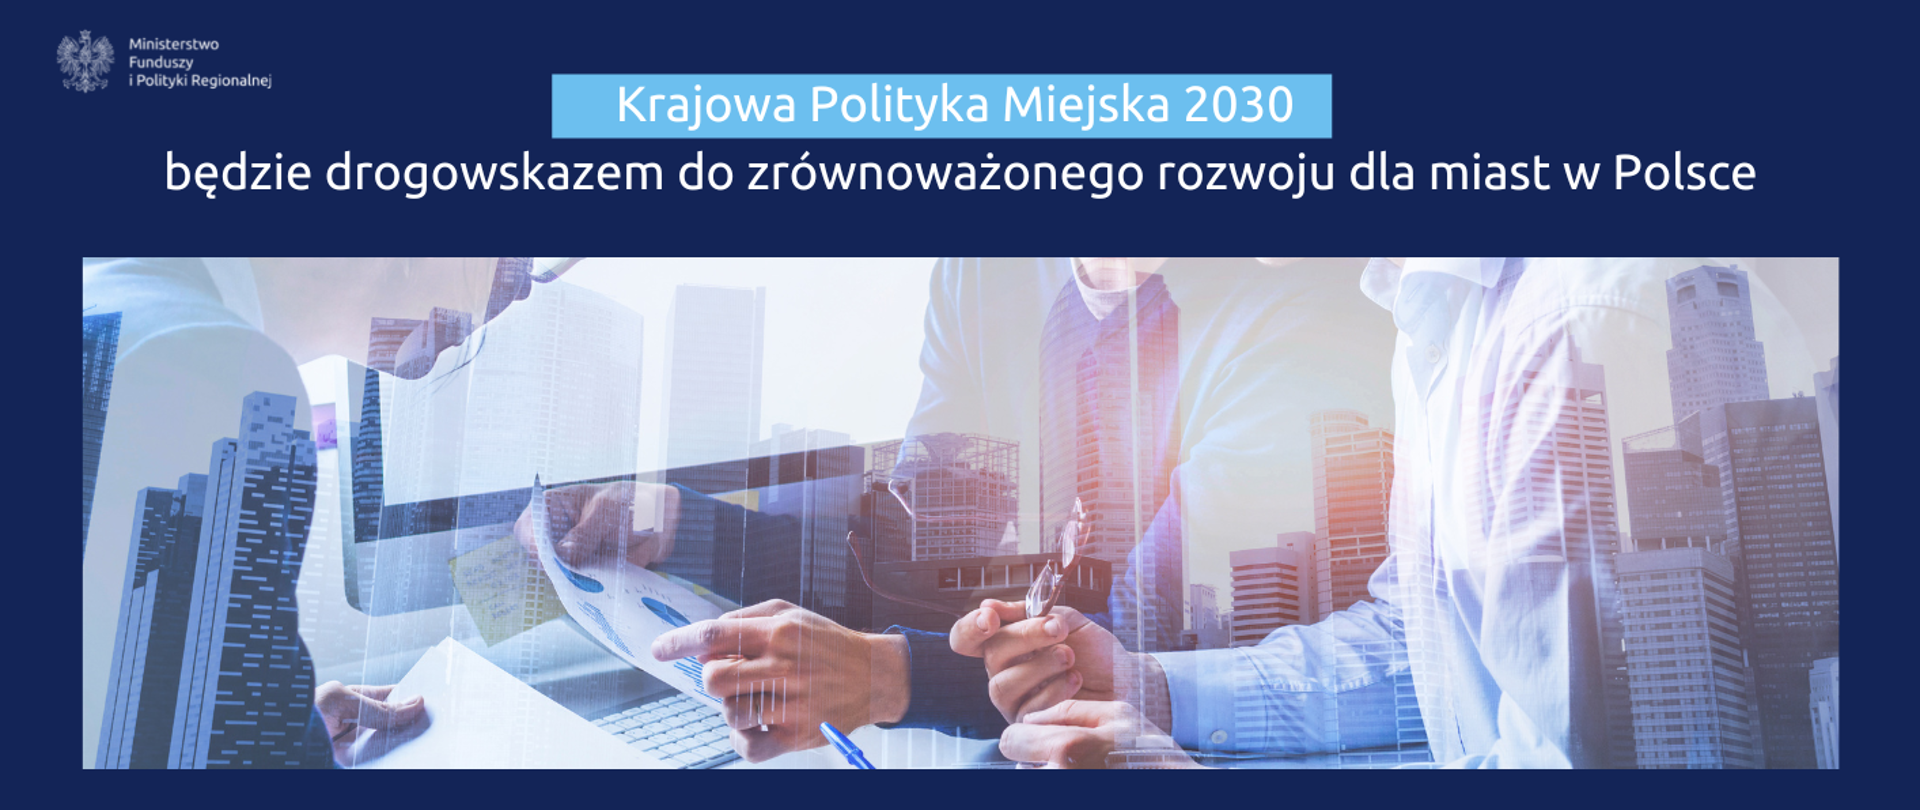 Na grafice napis: "Krajowa Polityka Miejska 2030 będzie drogowskazem do zrównoważonego rozwoju dla miast w Polsce